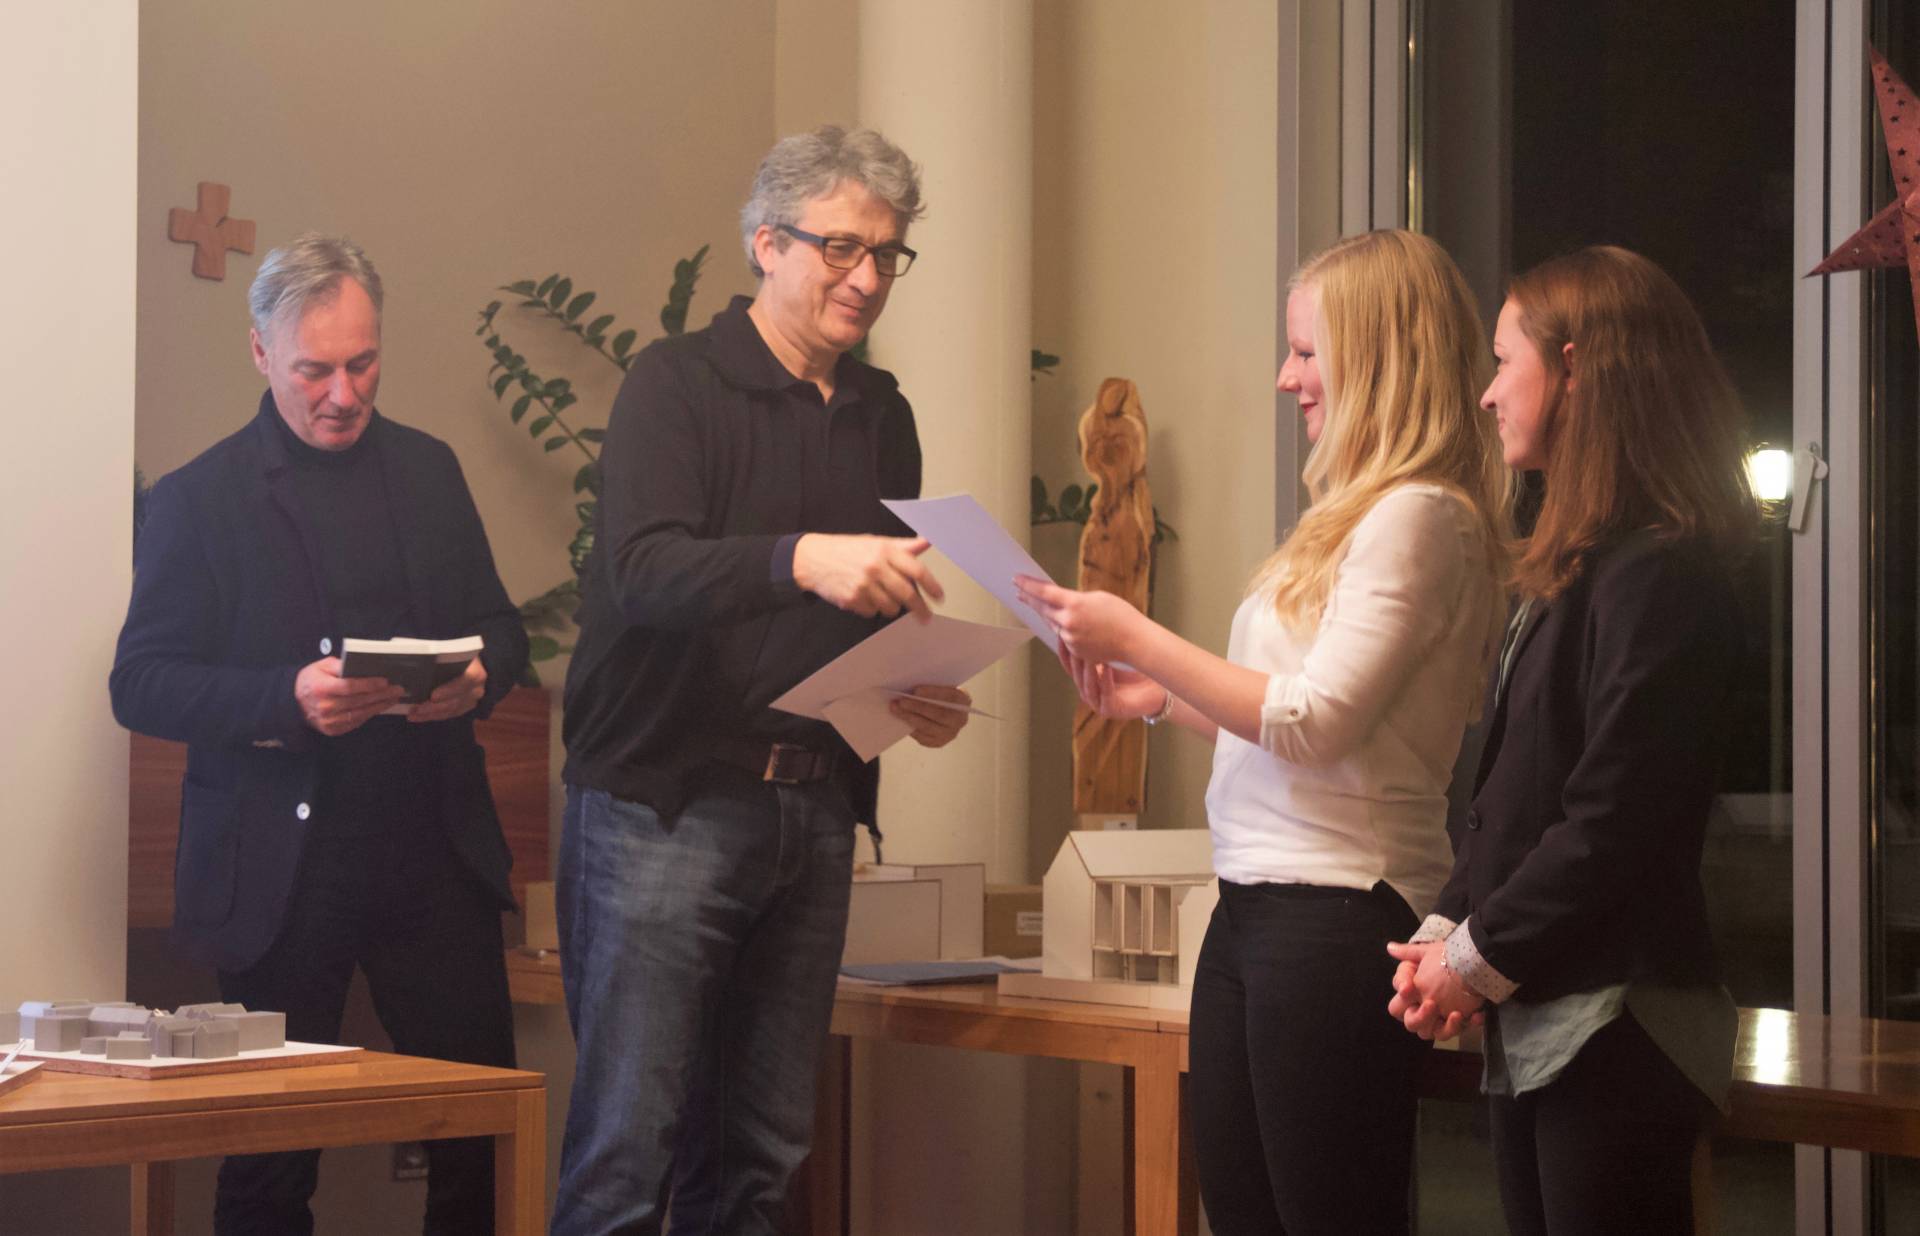 Der Vorsitzende Klaus Stumpf übergibt den zweiten Preis an Mona Dörner und Rebecca Eisenhut